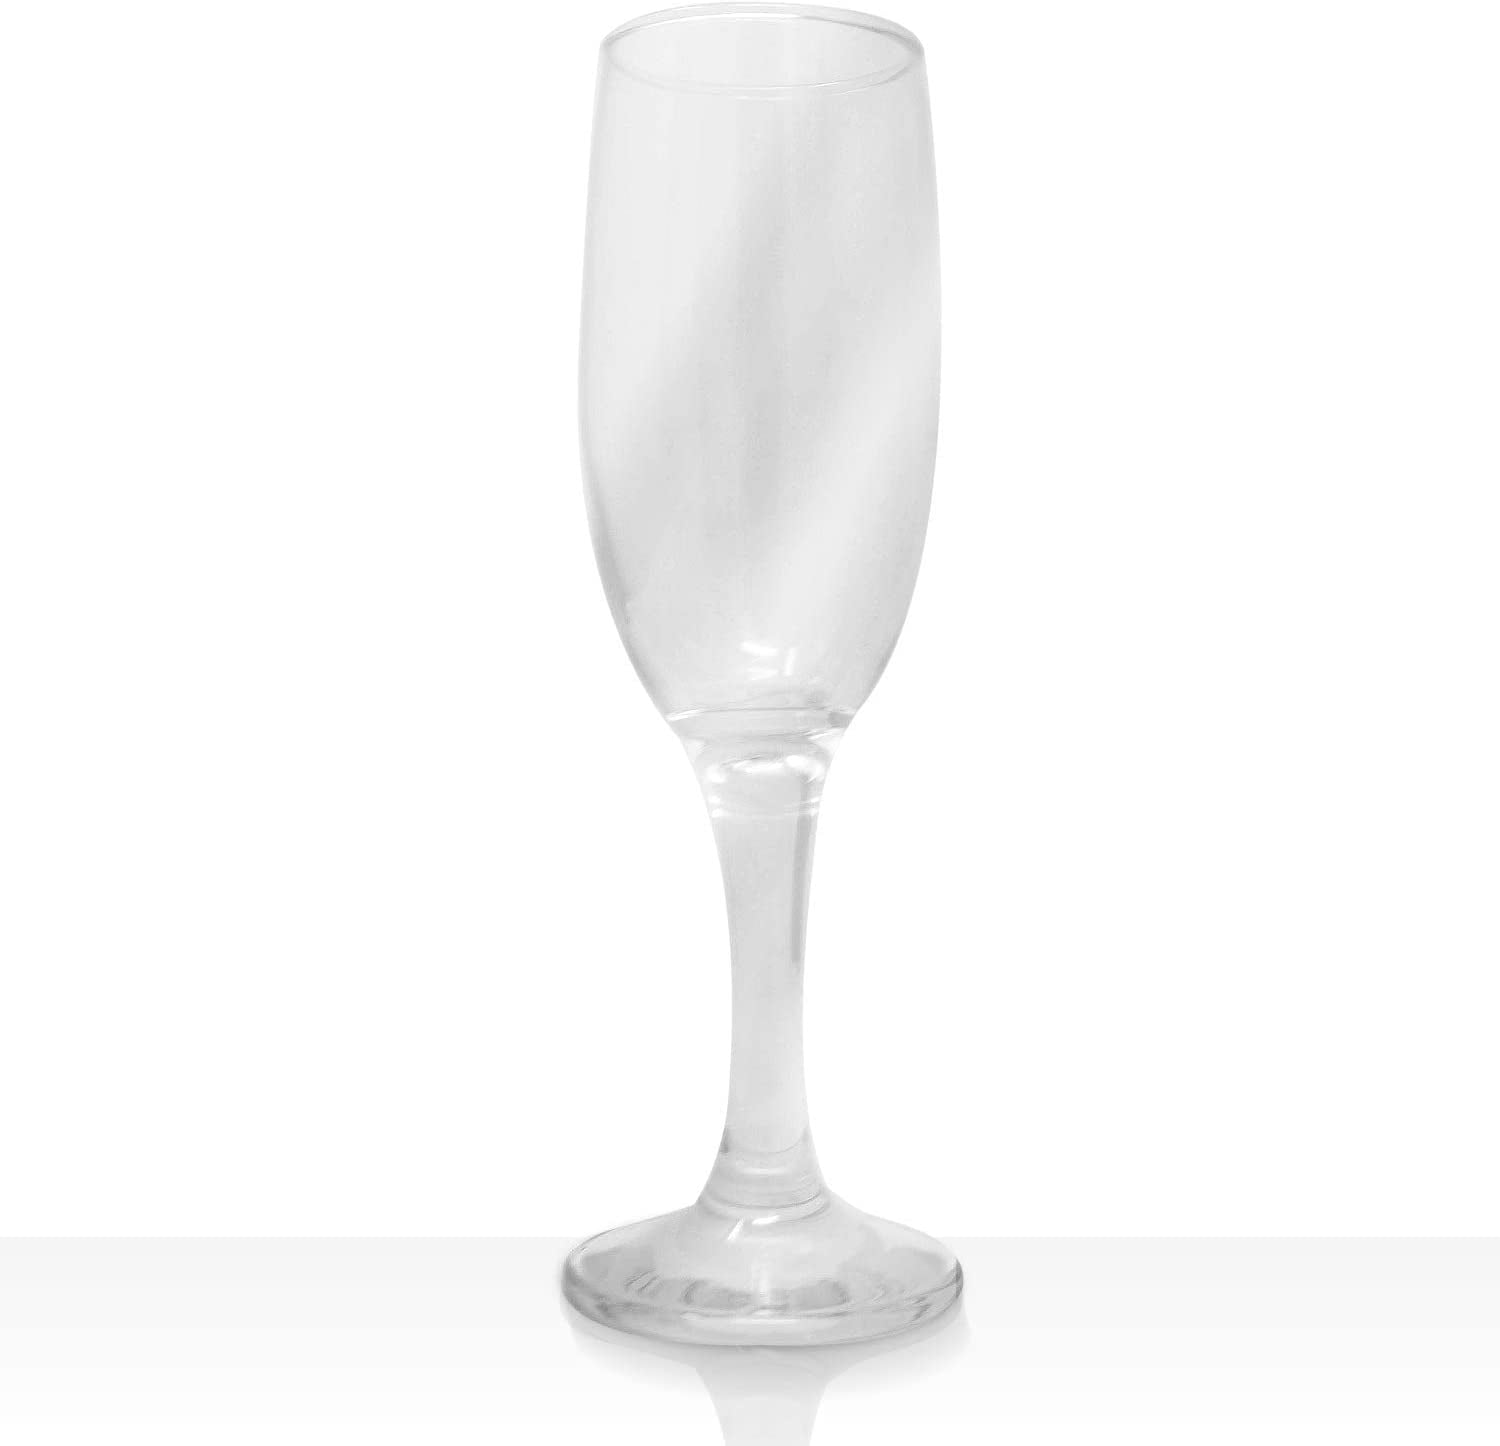 4 Lal Stemmed Wine Glasses 10 Oz Modern Crystal Clear Goblets Glassware Set of 